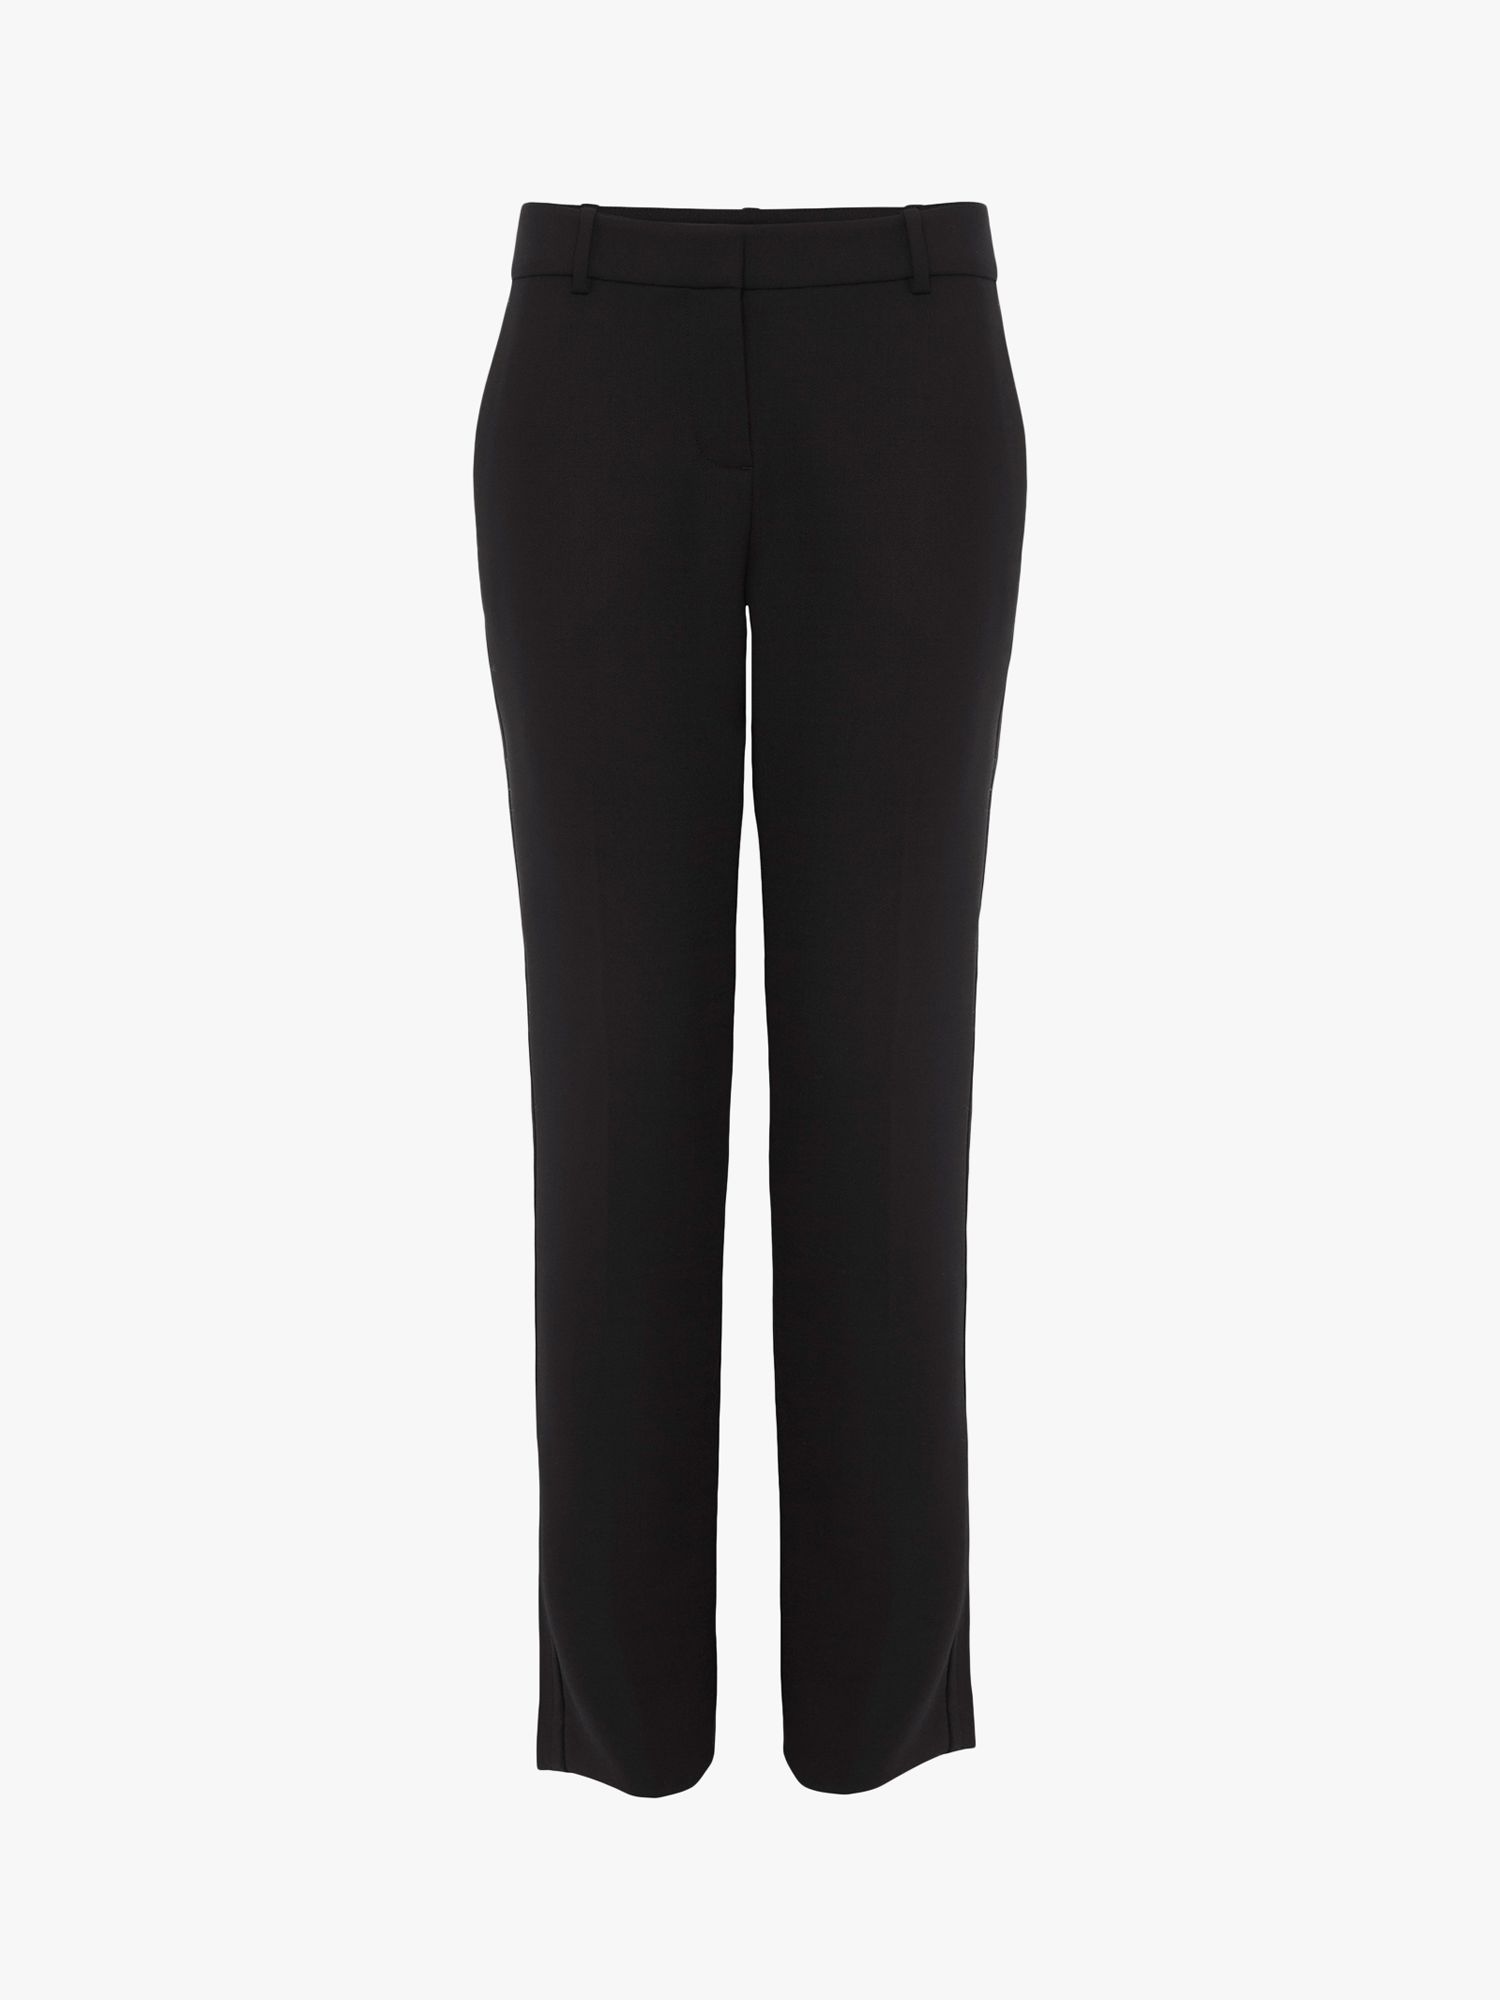 Buy Hobbs Giulia Slim Trousers, Black Online at johnlewis.com